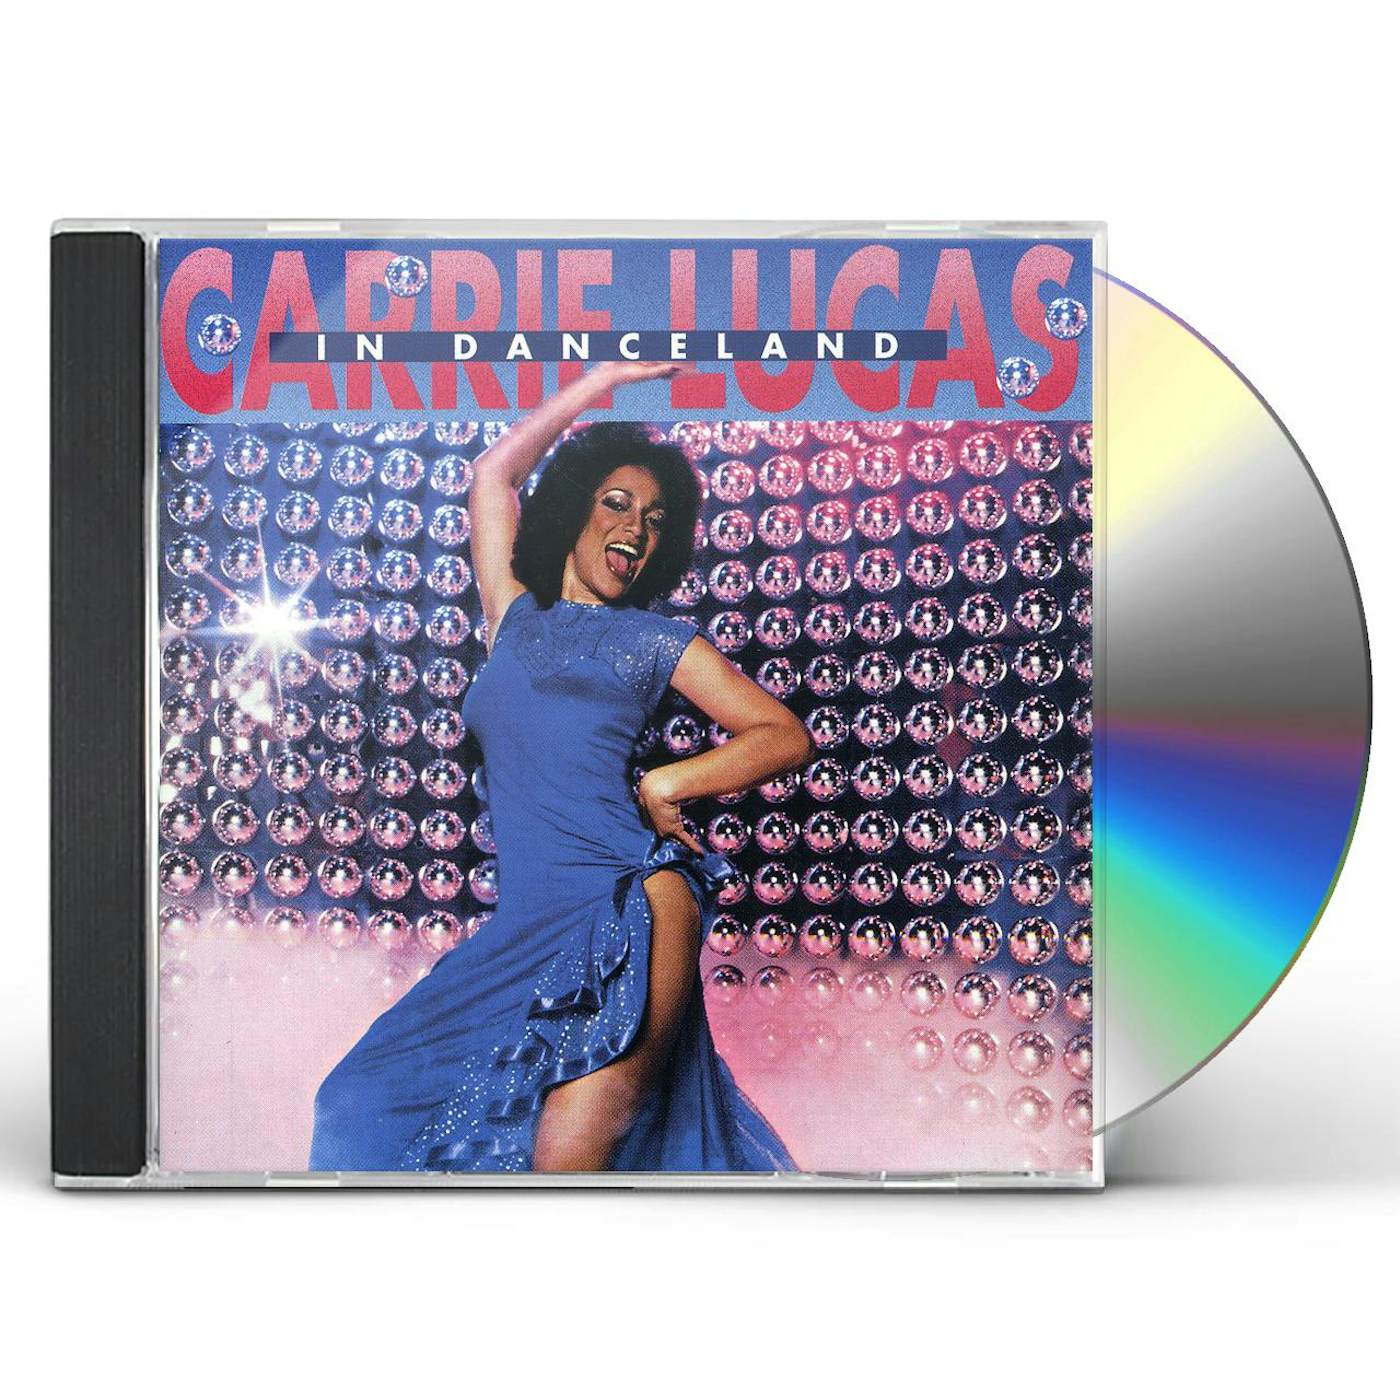 Carrie Lucas IN DANCELAND CD